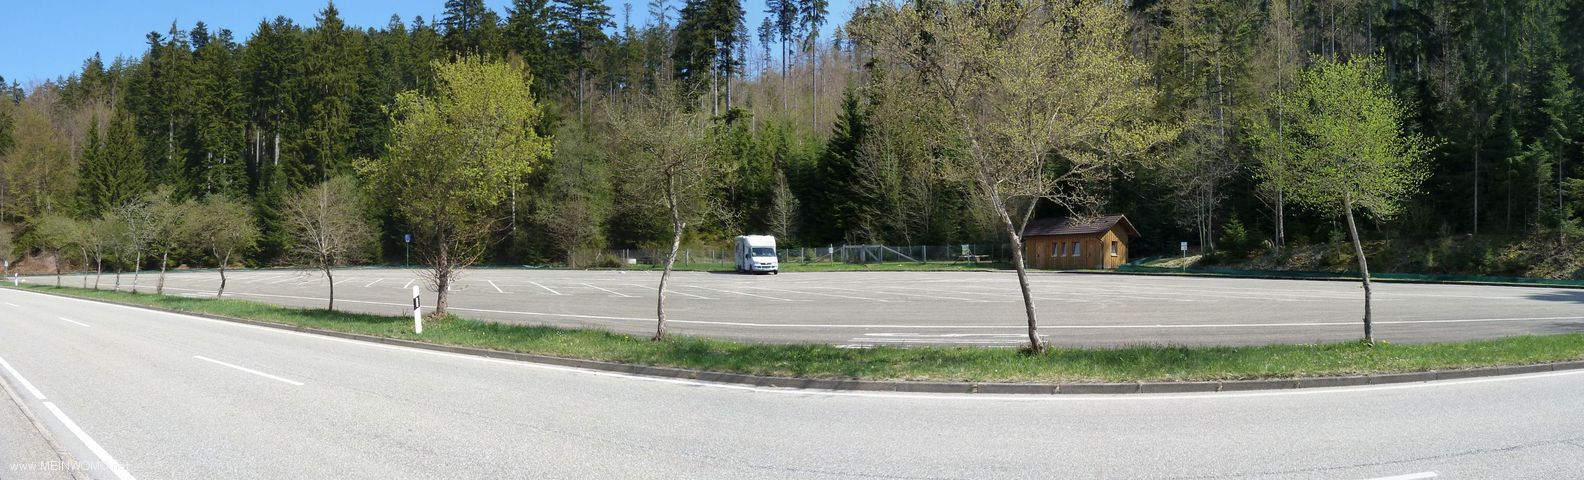  Place de parking au barrage de la Nagold